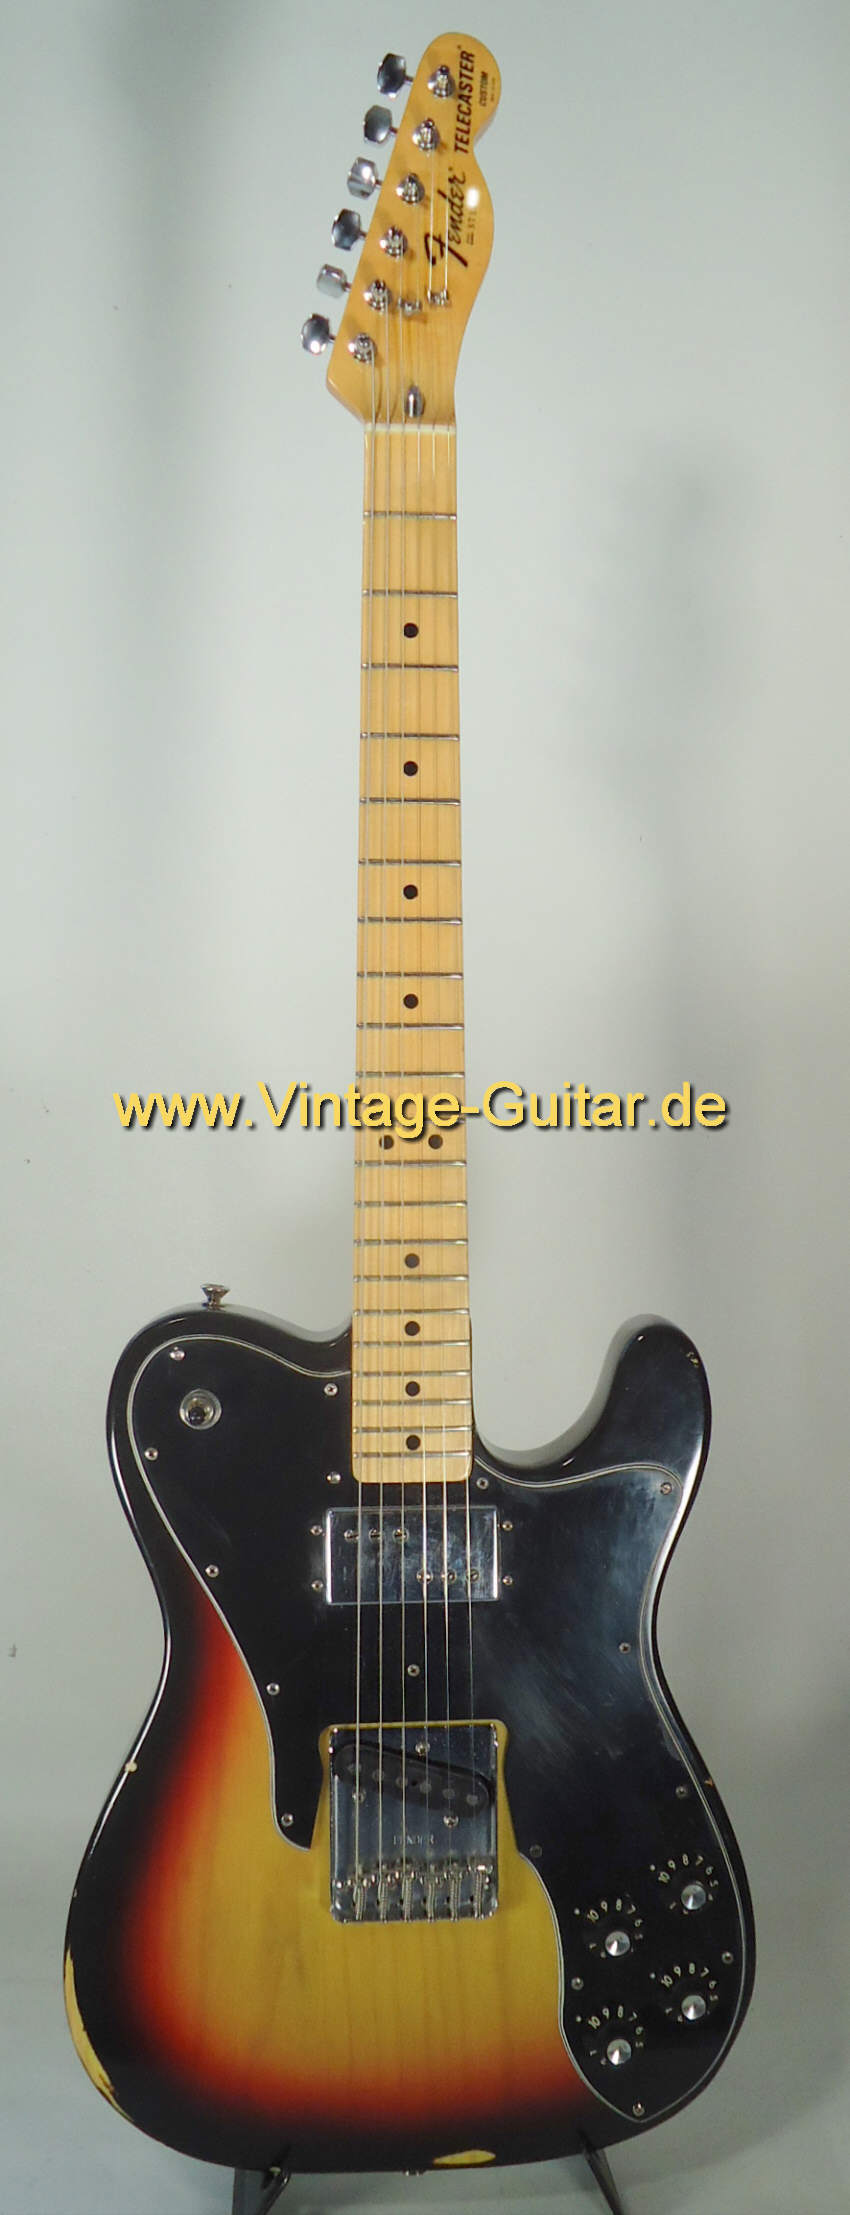 Fender Telecaster Custom 1977 sunburst a.jpg